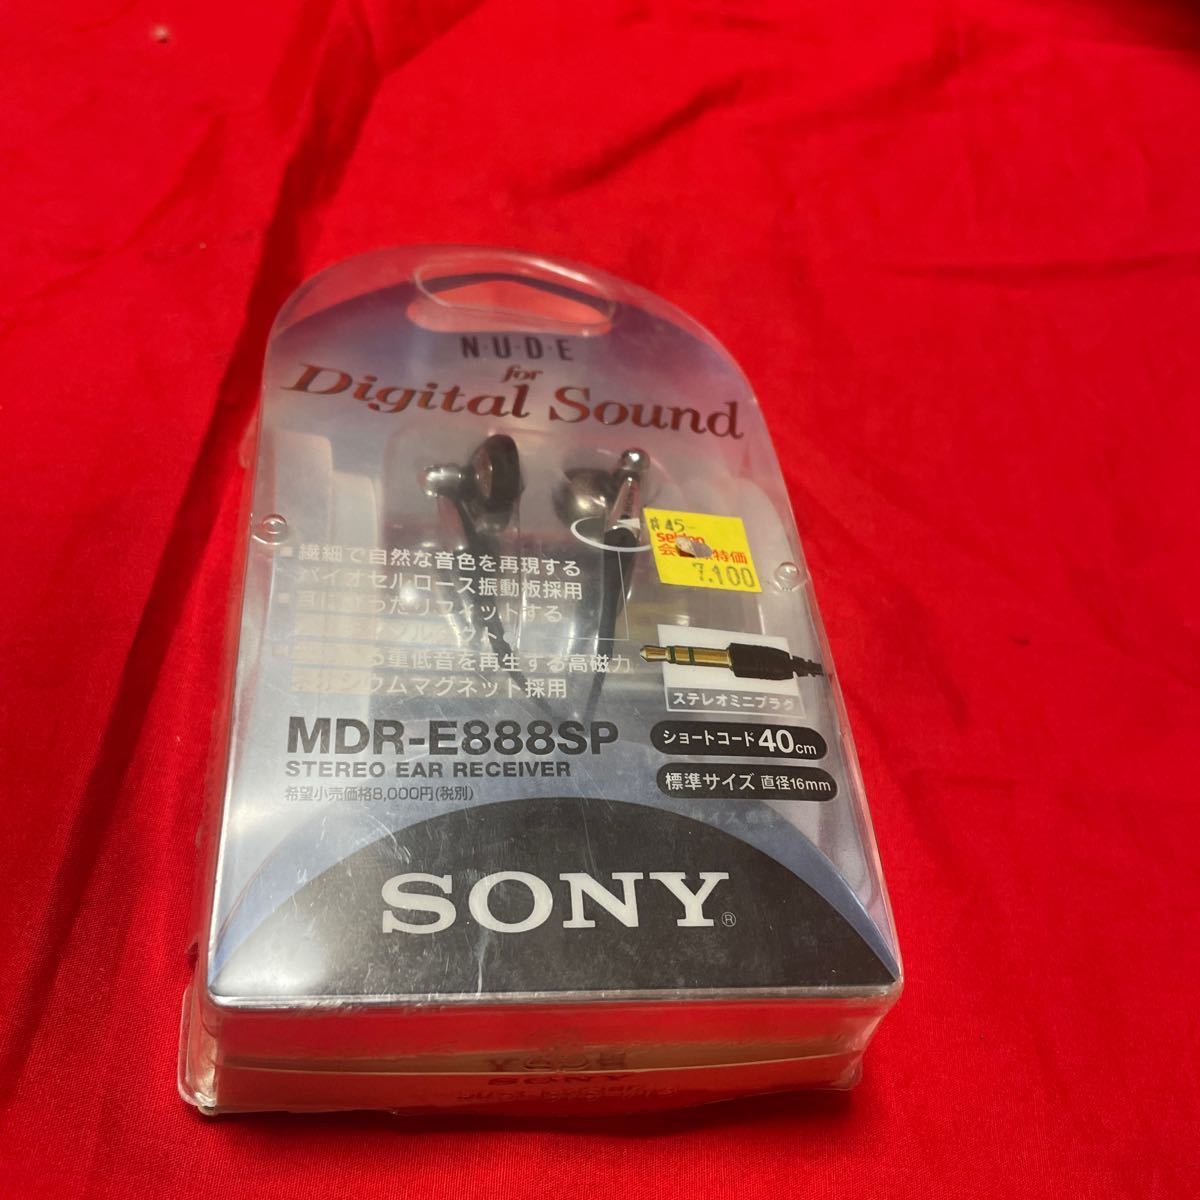 【新品未使用】SONY MDR-E888SP インナーイヤー型イヤホン N.U.D.E for digital sound超 レア_画像2